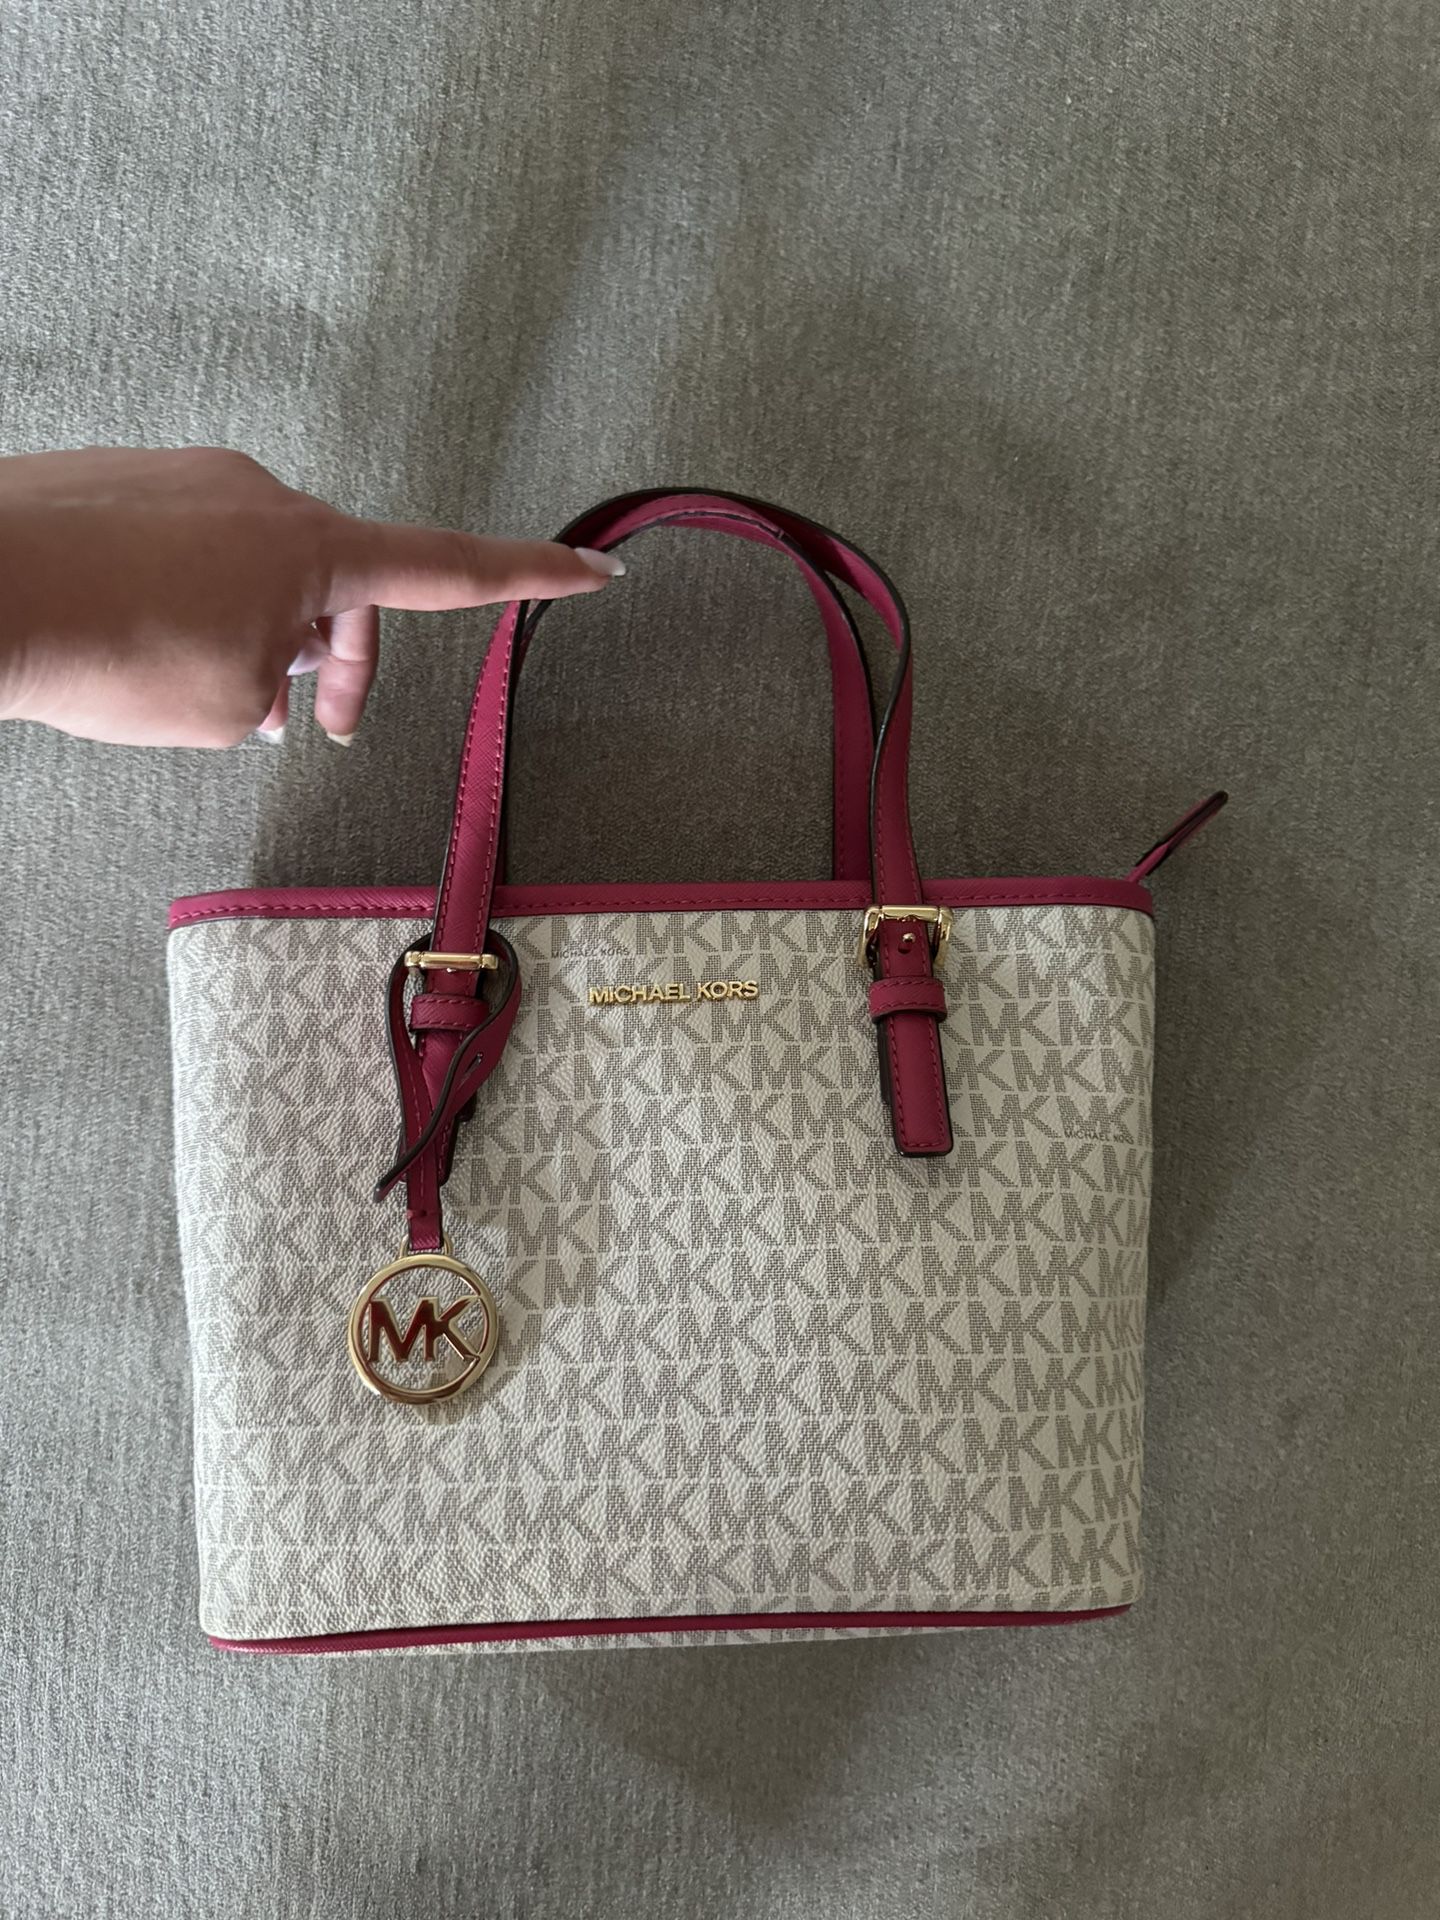 Real Michael Kors Small Handbag - Pink And White